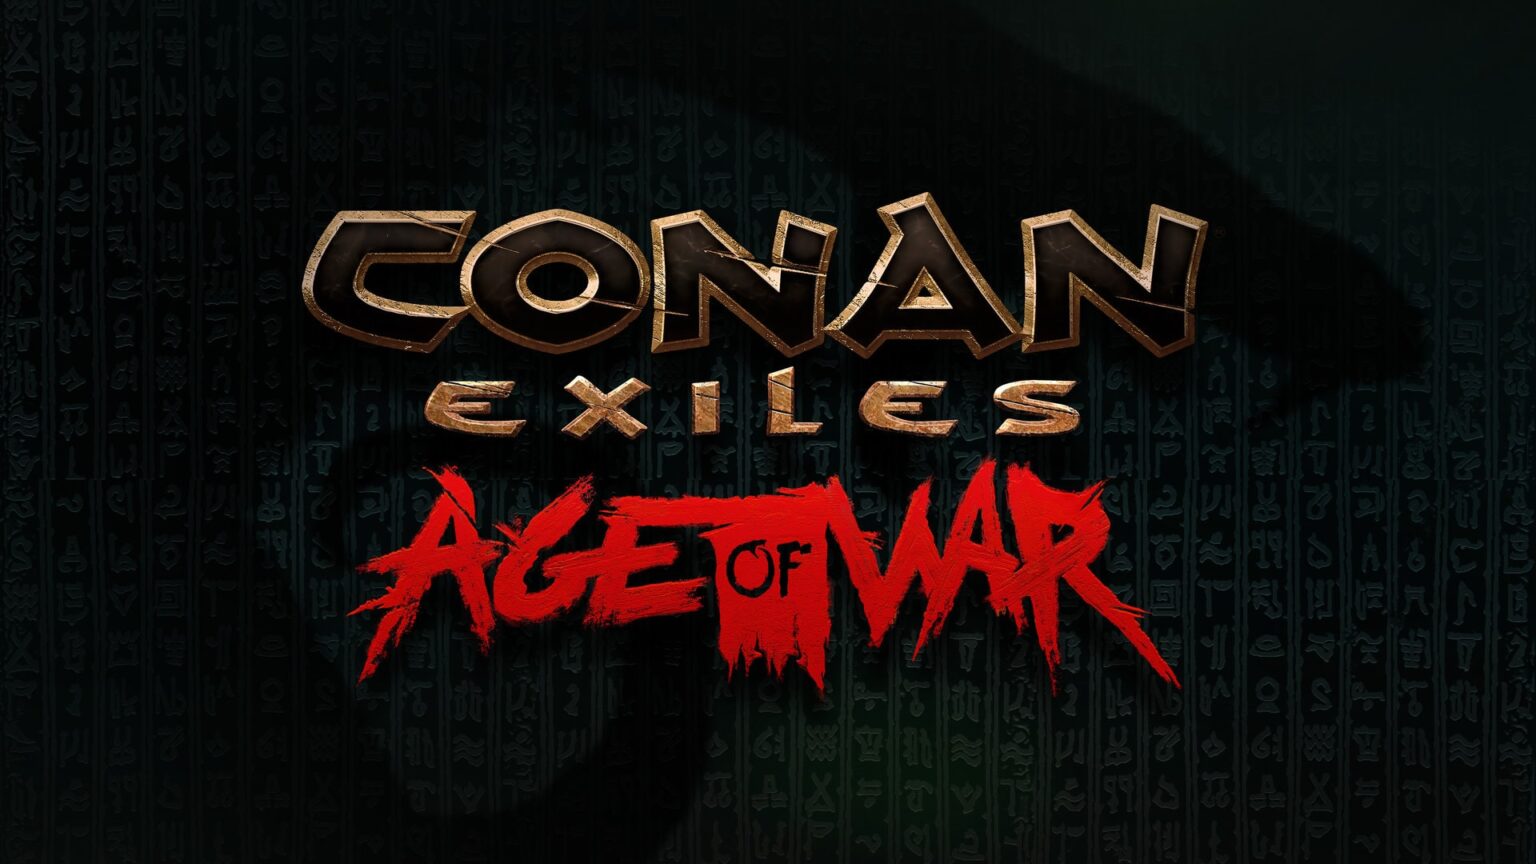 Conan Exiles: Age of war